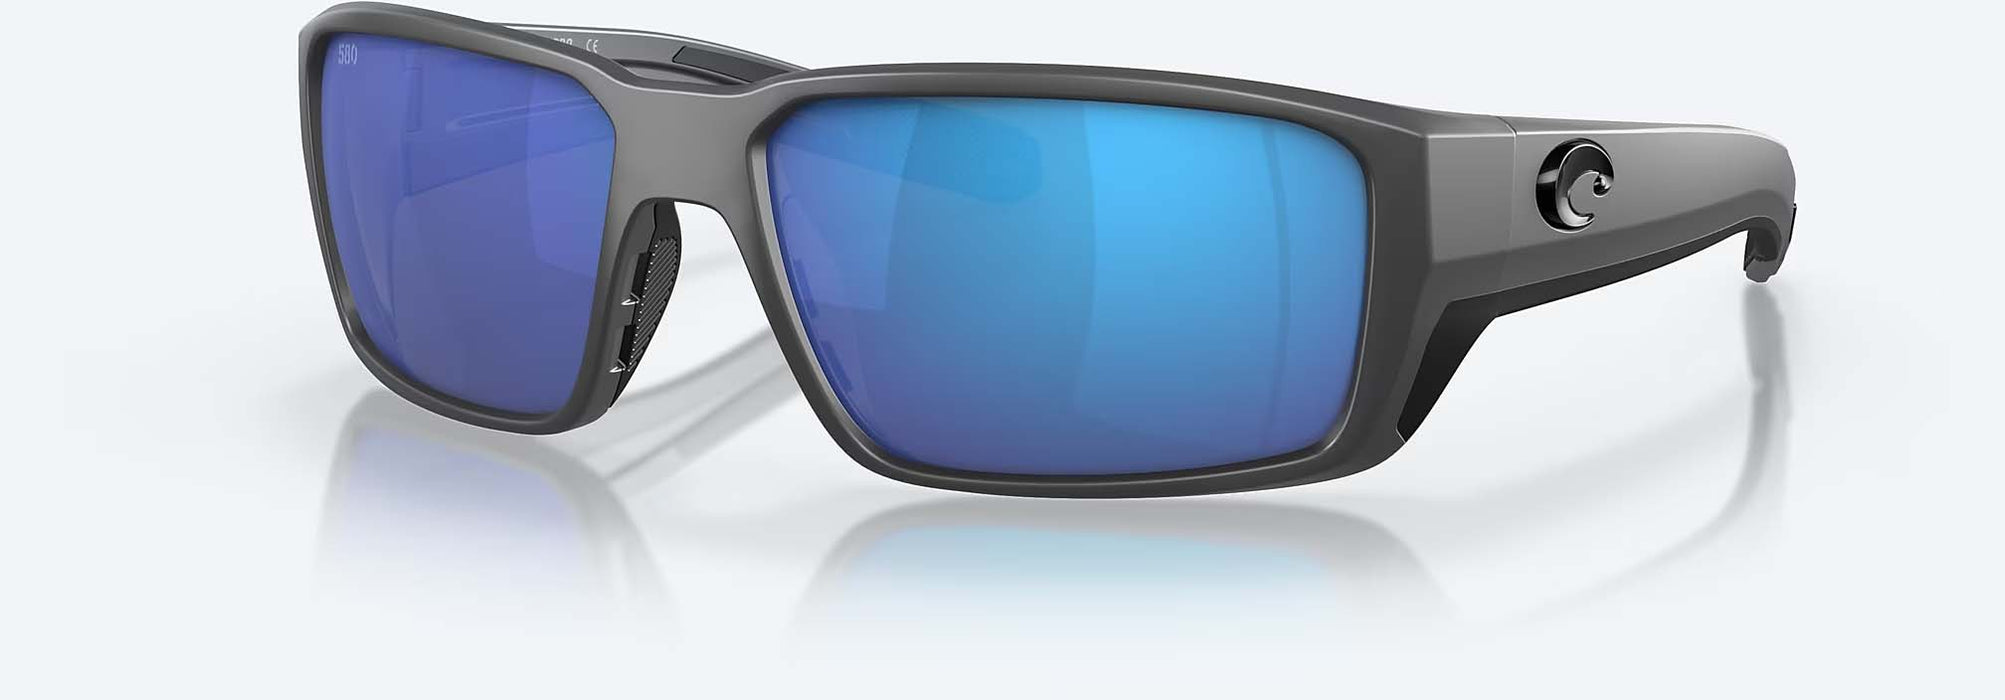 Costa Fantail Pro Polarized Glass Sunglasses